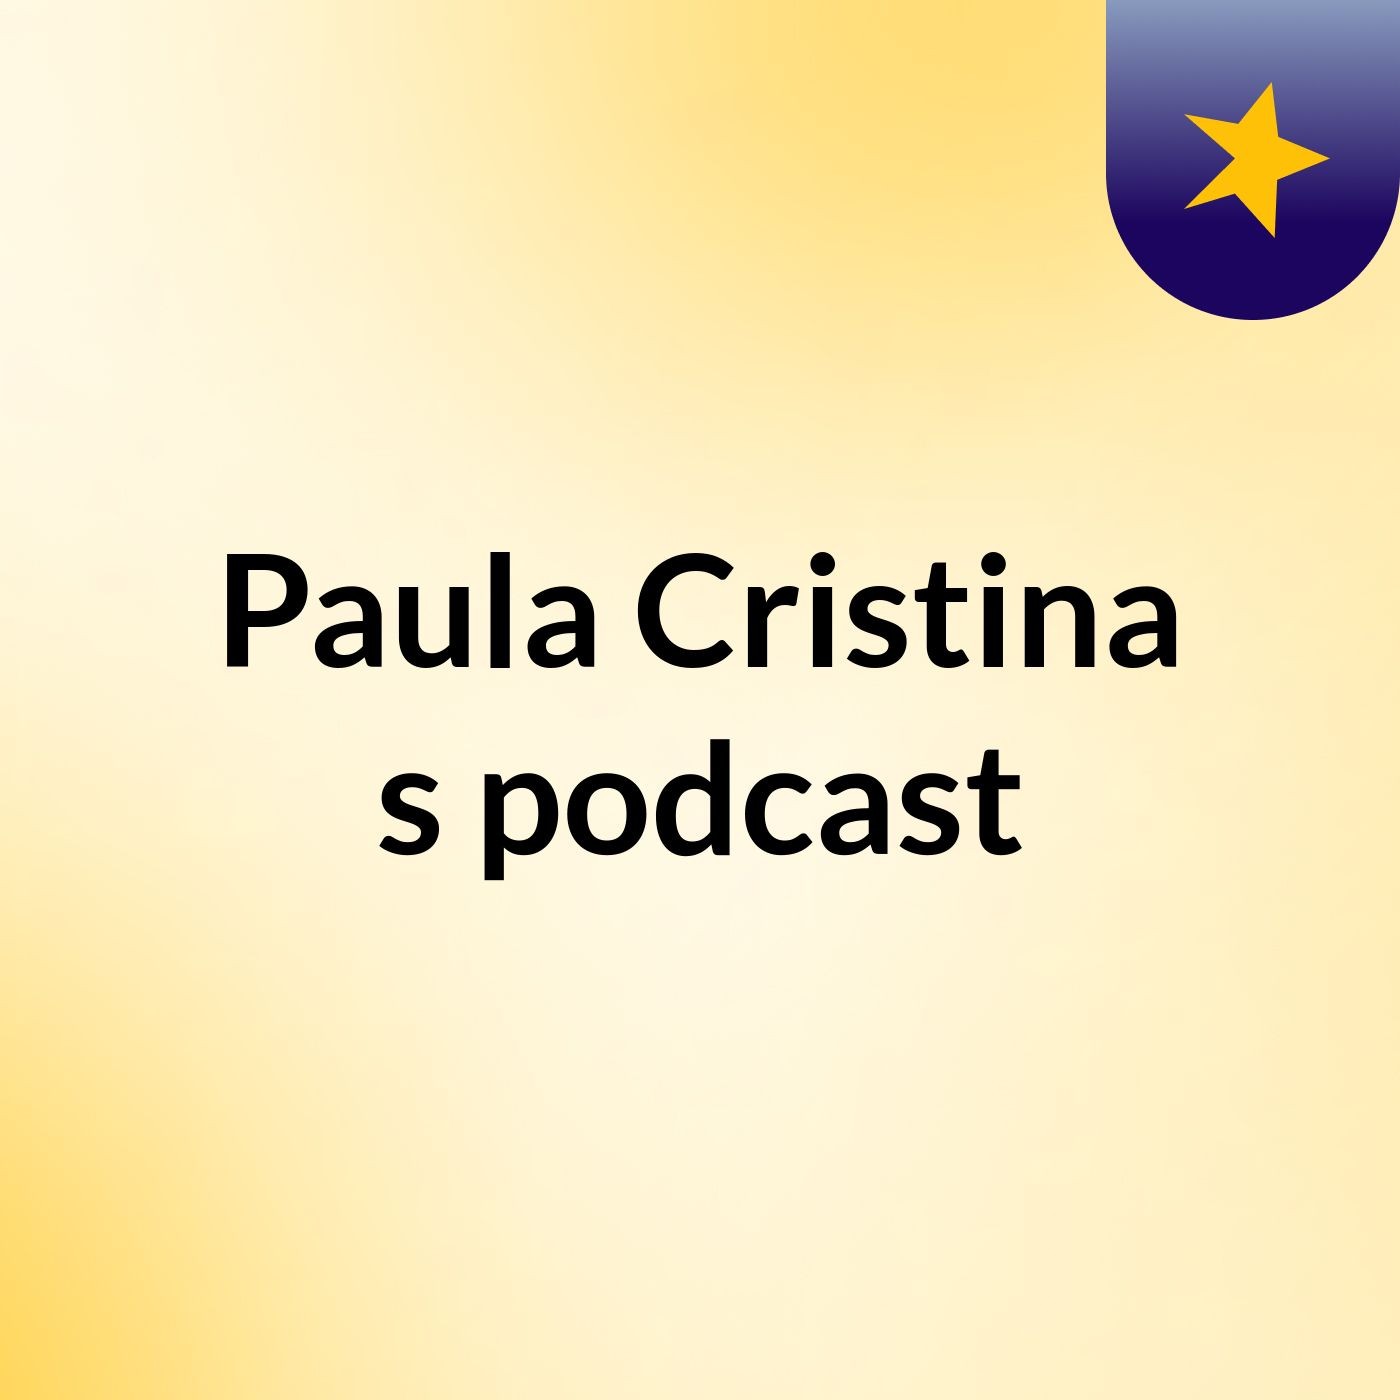 Paula Cristina's podcast